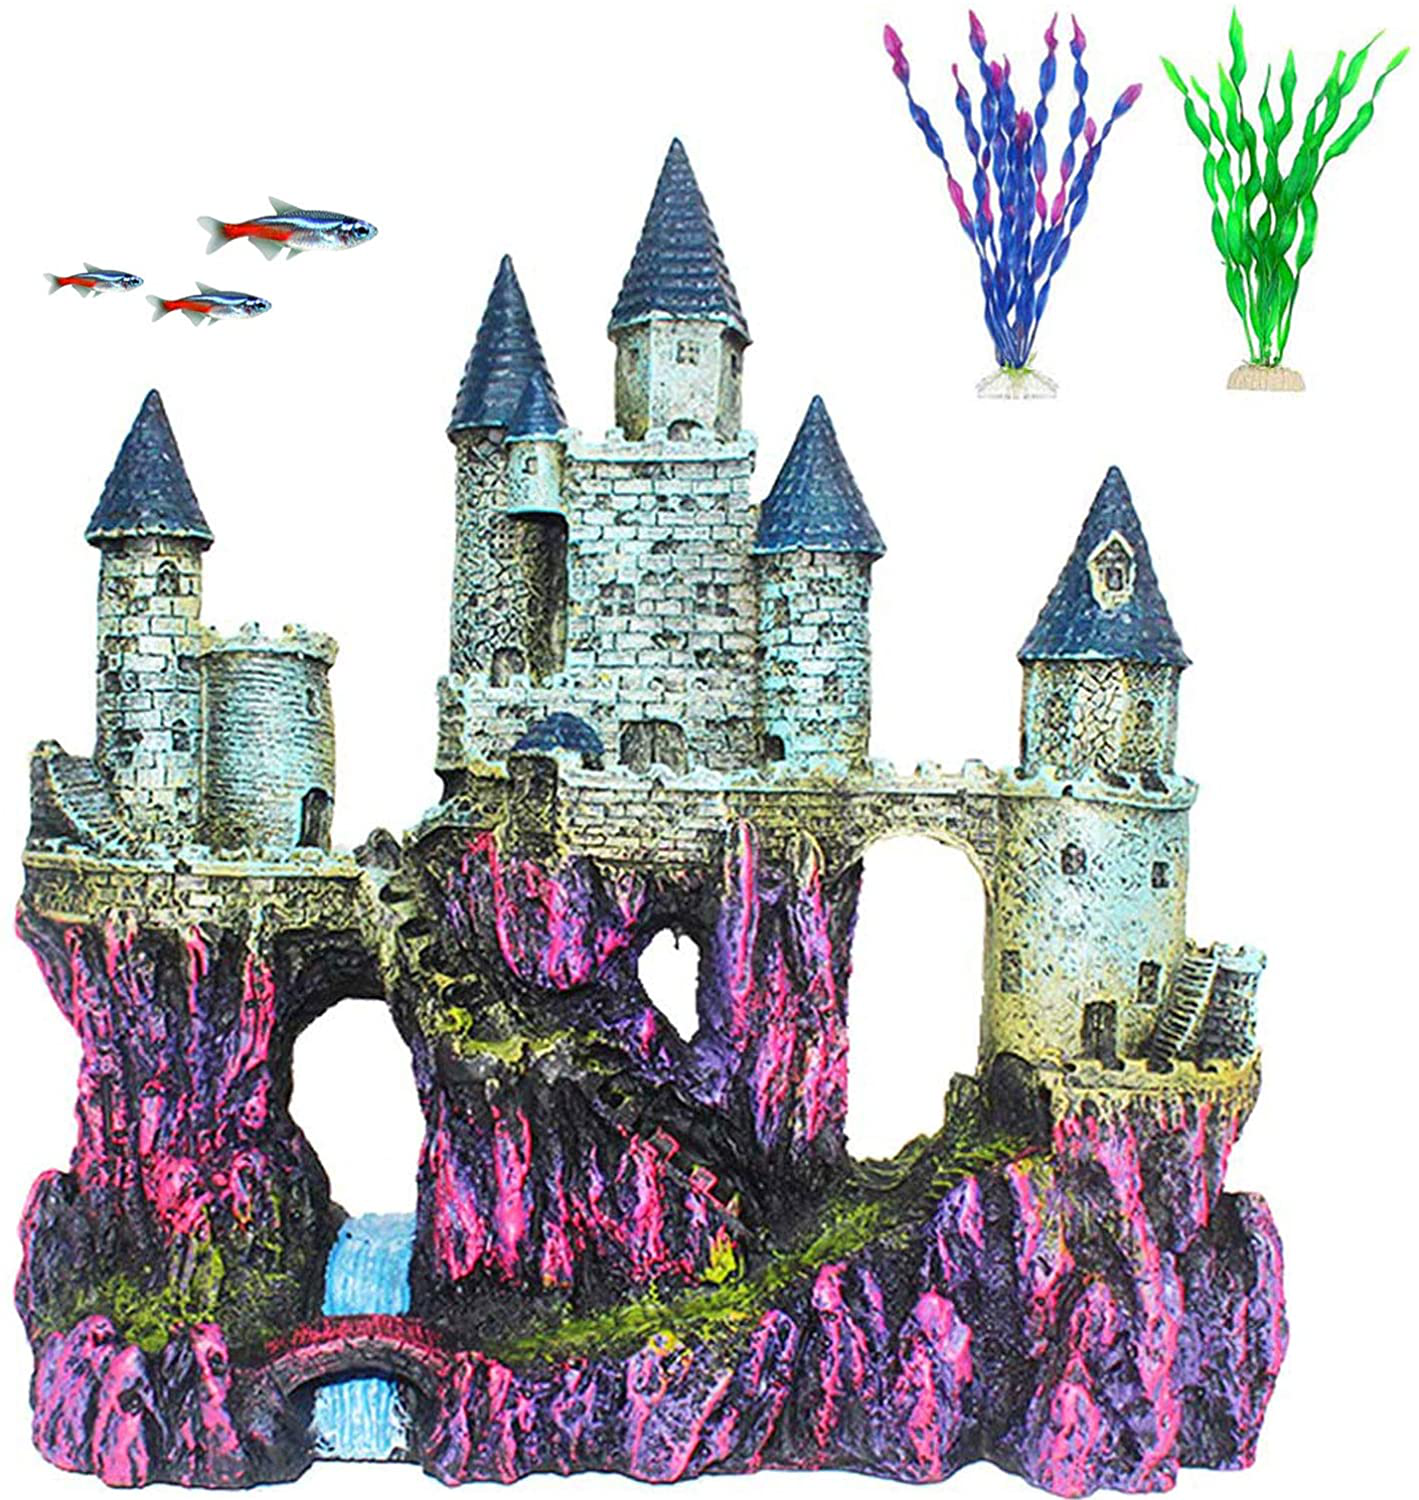 PINVNBY Aquarium Resin Castle Decoration Fish Tank Driftwood Castle Cave Hideouts House Plants Supplies Accessories(3 Pcs) Animals & Pet Supplies > Pet Supplies > Fish Supplies > Aquarium Decor PINVNBY Purple  